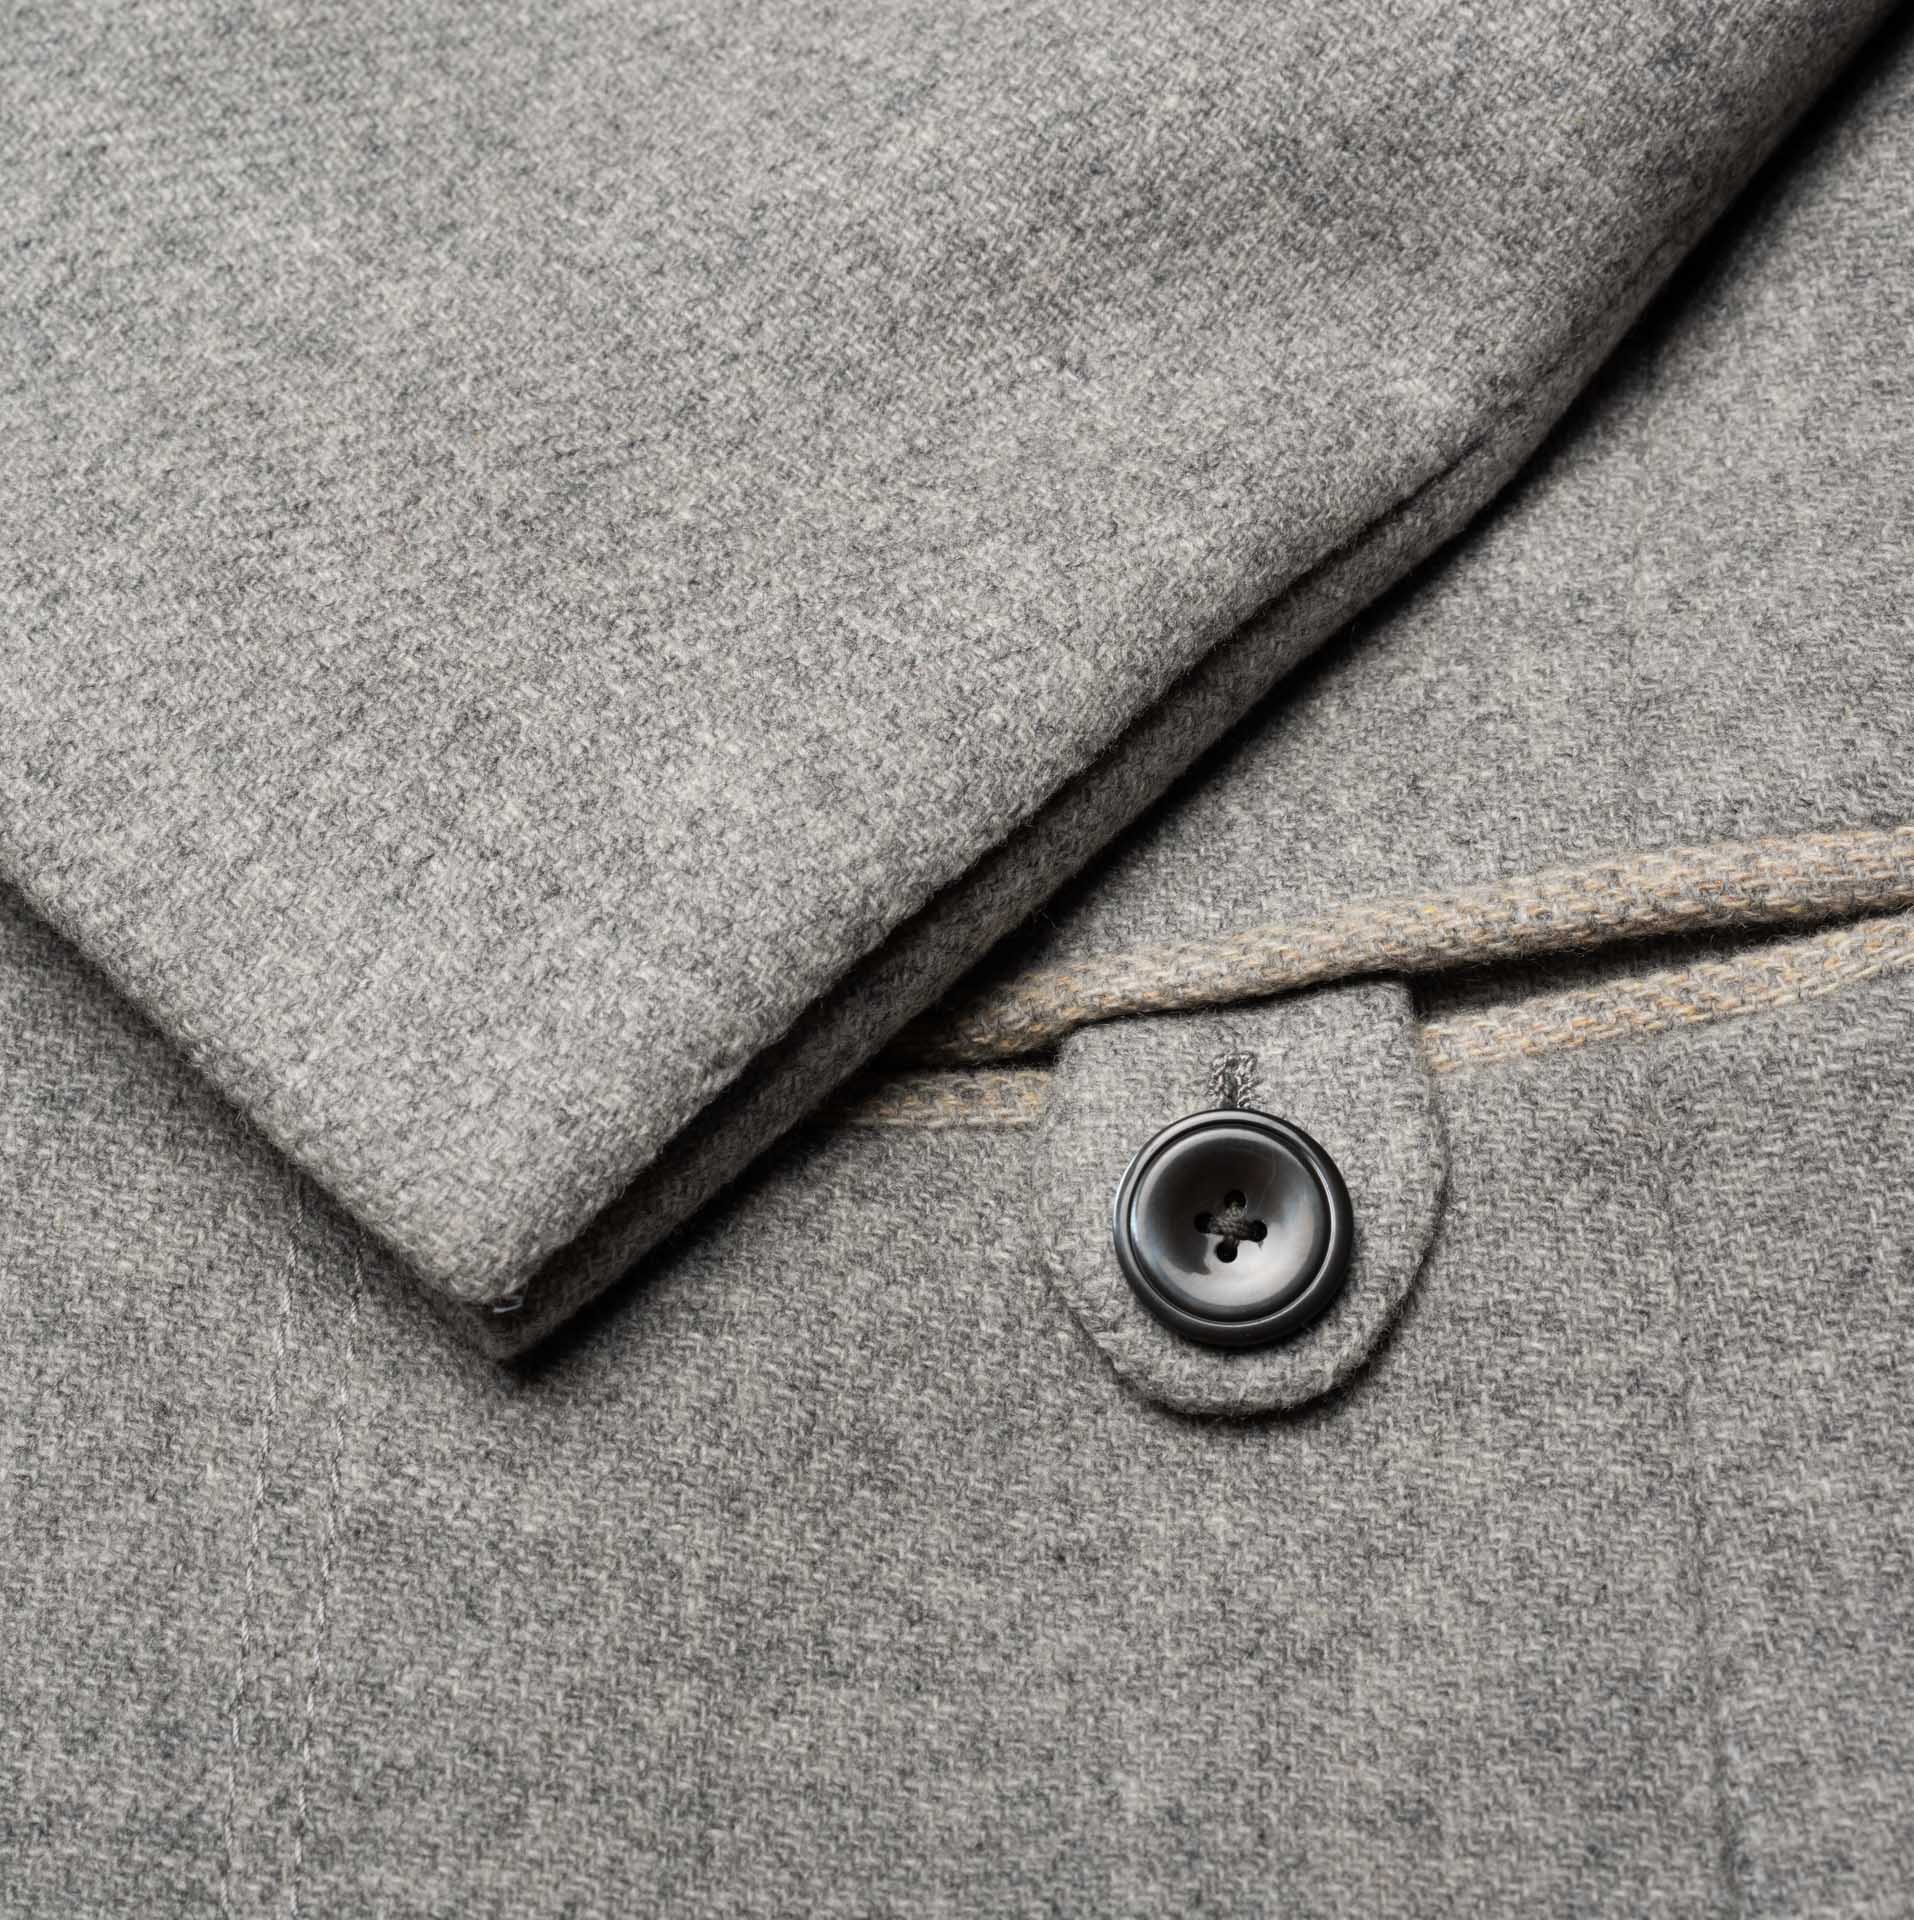 D'AVENZA Roma Handmade Gray Wool Over Coat EU 50 NEW US 40 D'AVENZA